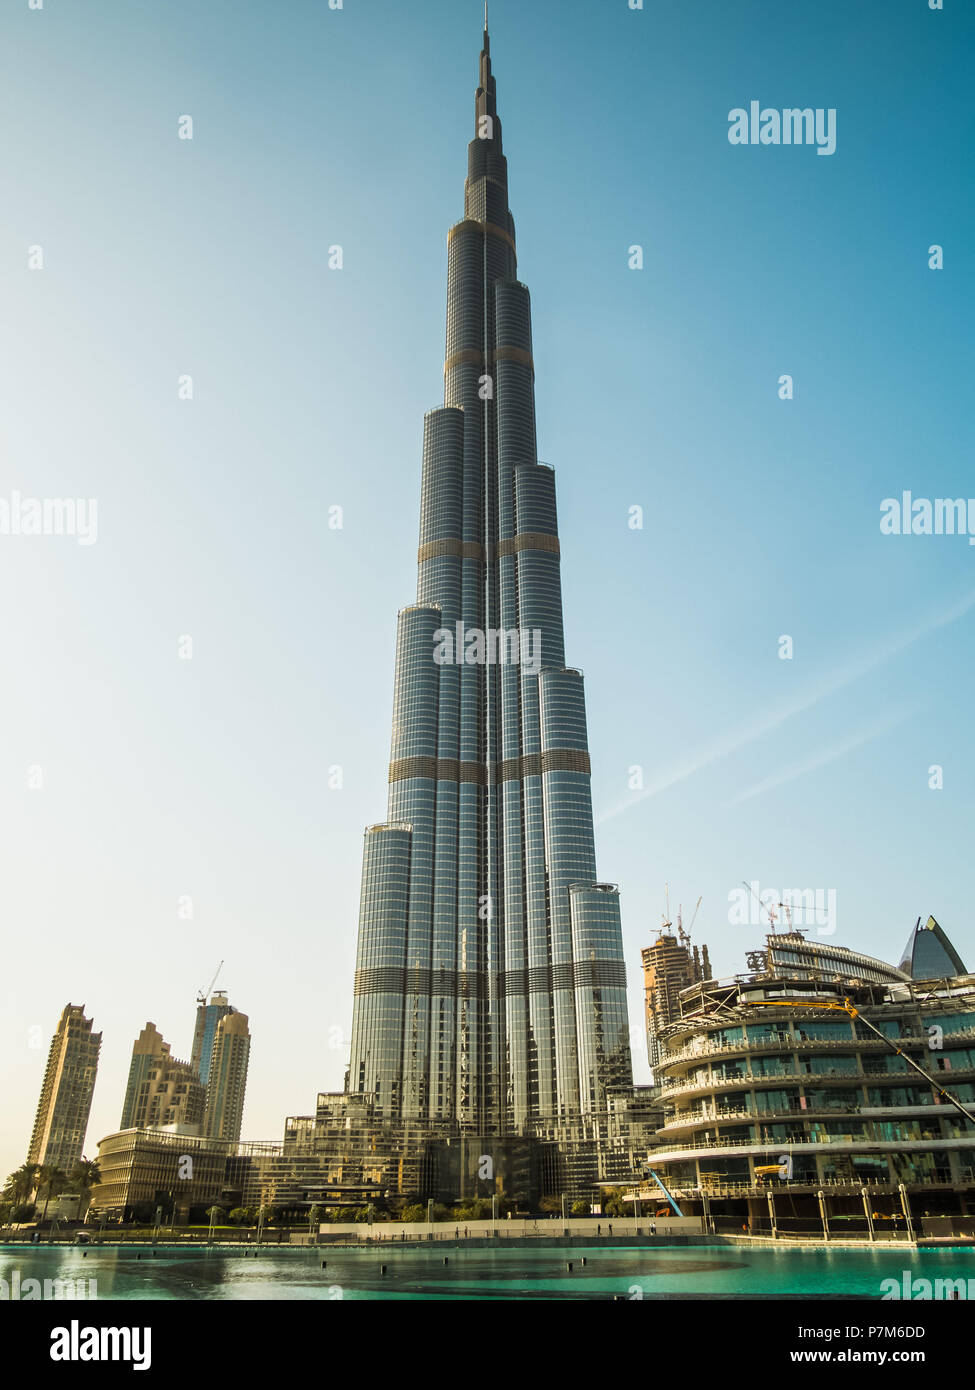 Burj Dubai, der höchste Mann Struktur in der Welt bei 828 Meter, Dubai, Vereinigte Arabische Emirate, Stockfoto